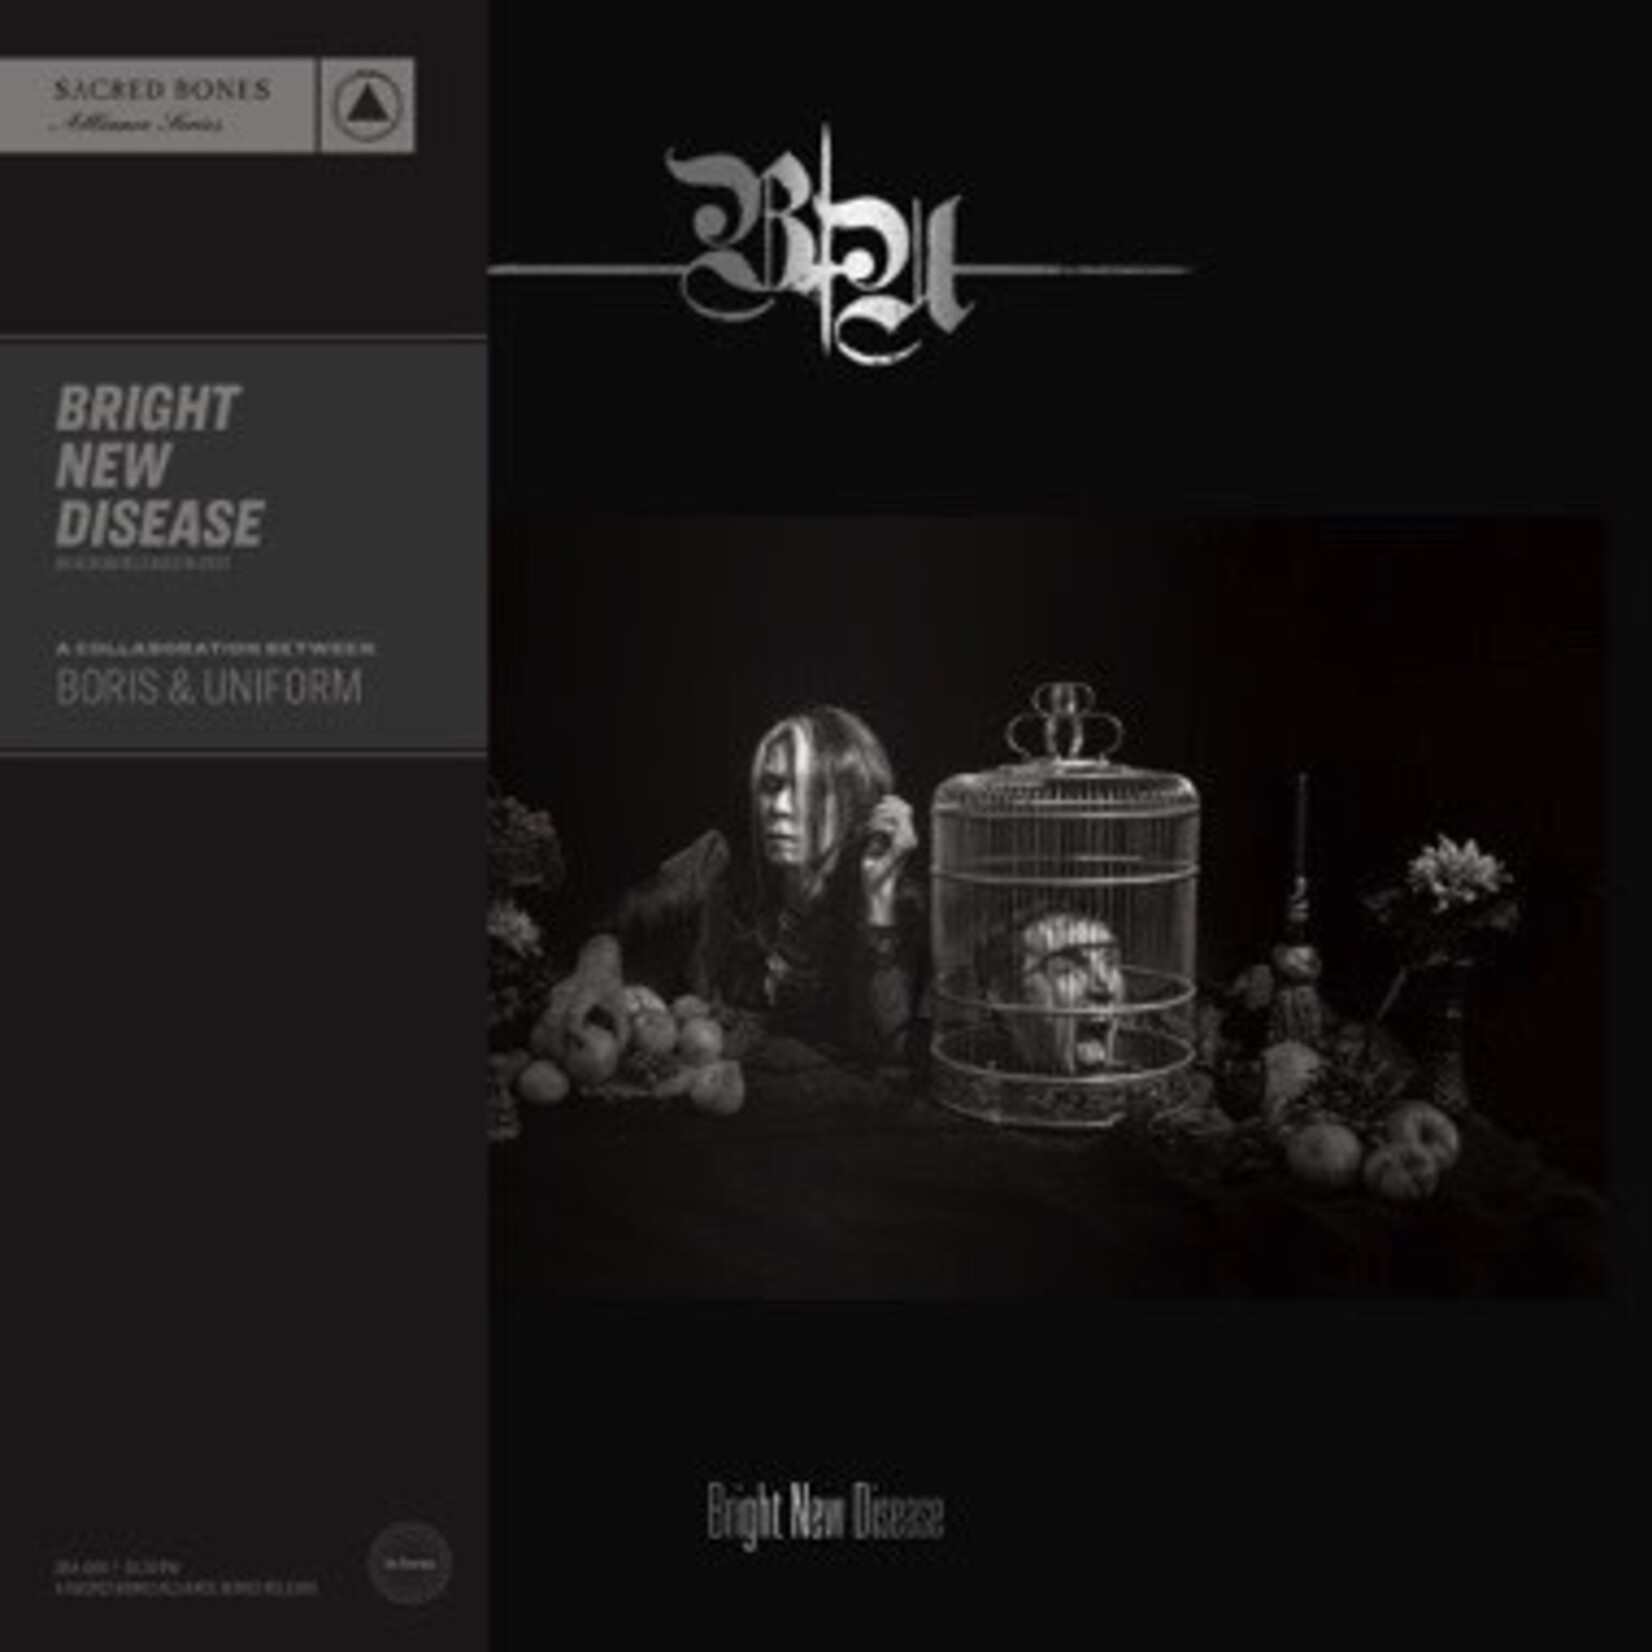 Sacred Bones Boris & Uniform - Bright New Disease (LP) [Red]